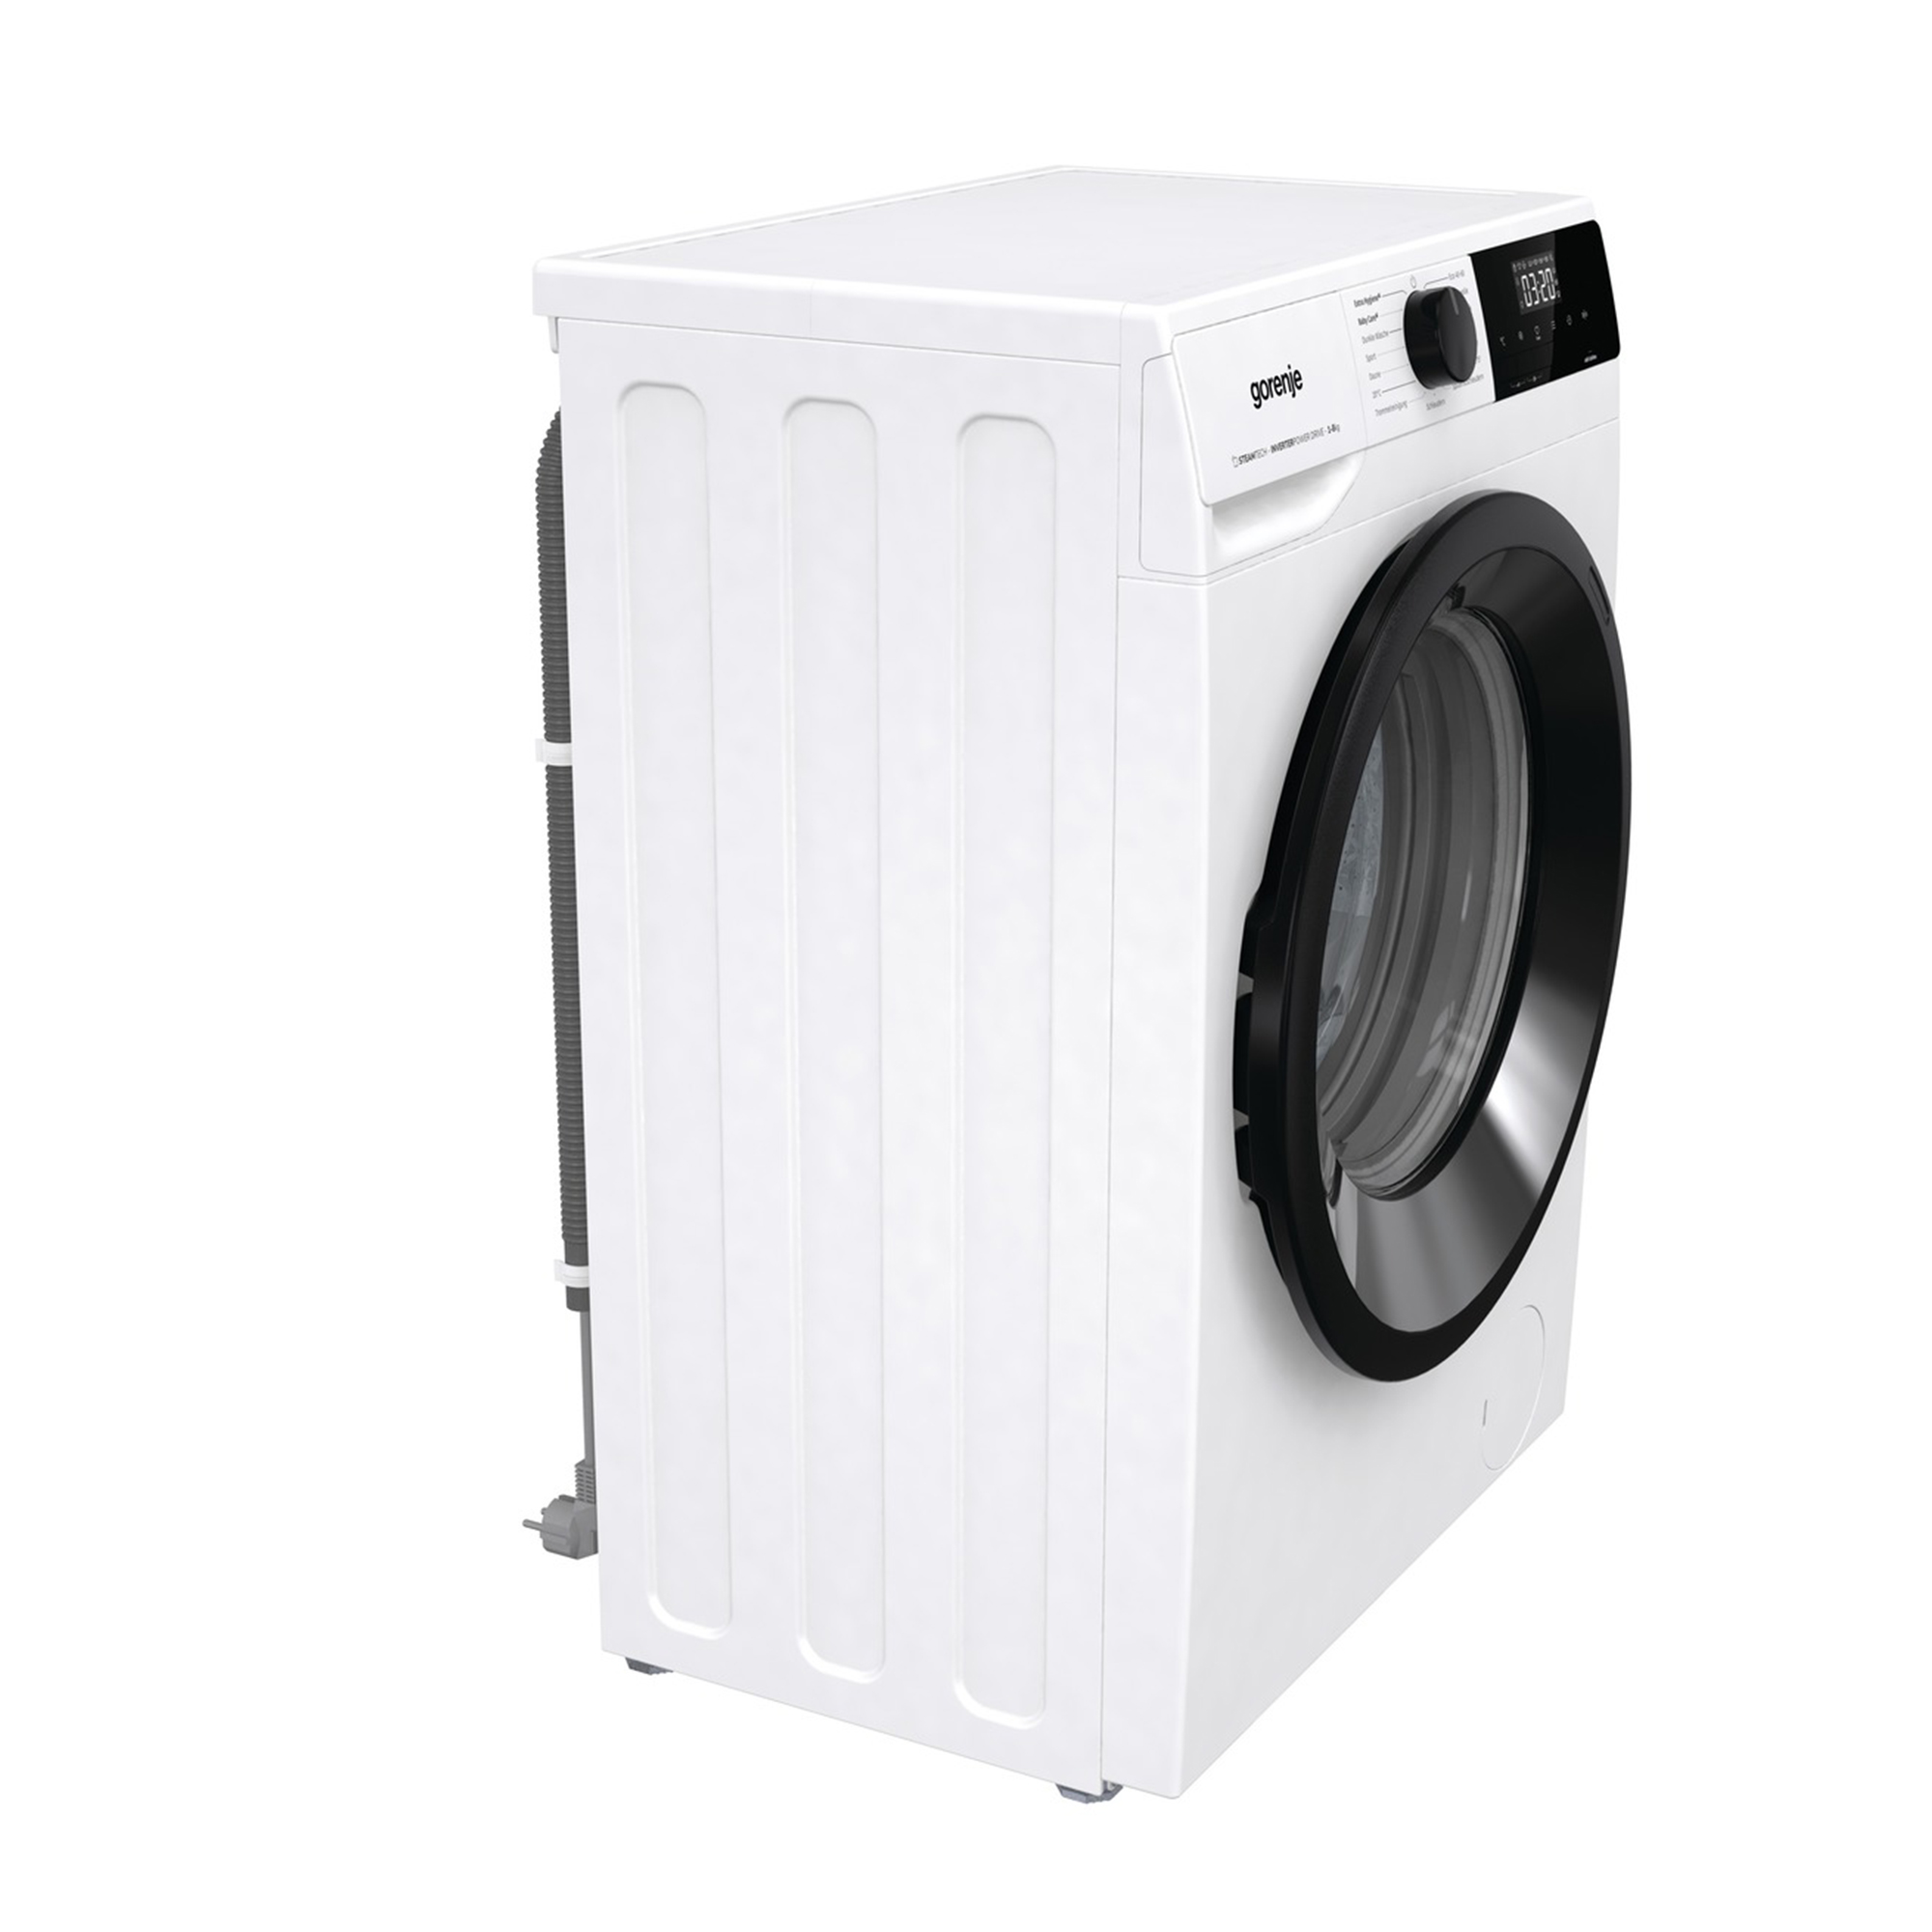 (8 A) Waschmaschine WNHEI84APS/DE GORENJE kg,